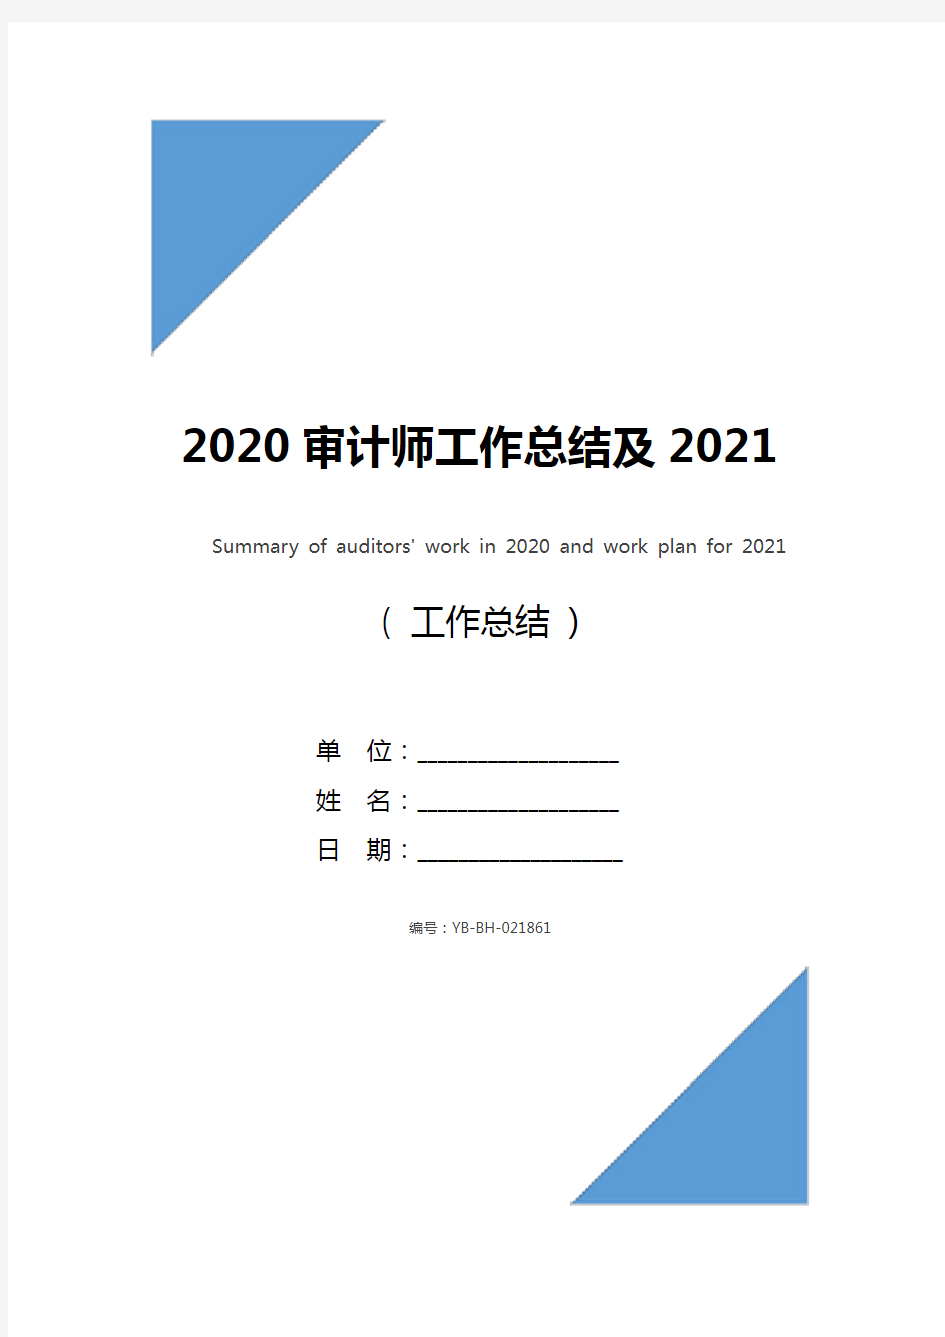 2020审计师工作总结及2021年工作计划